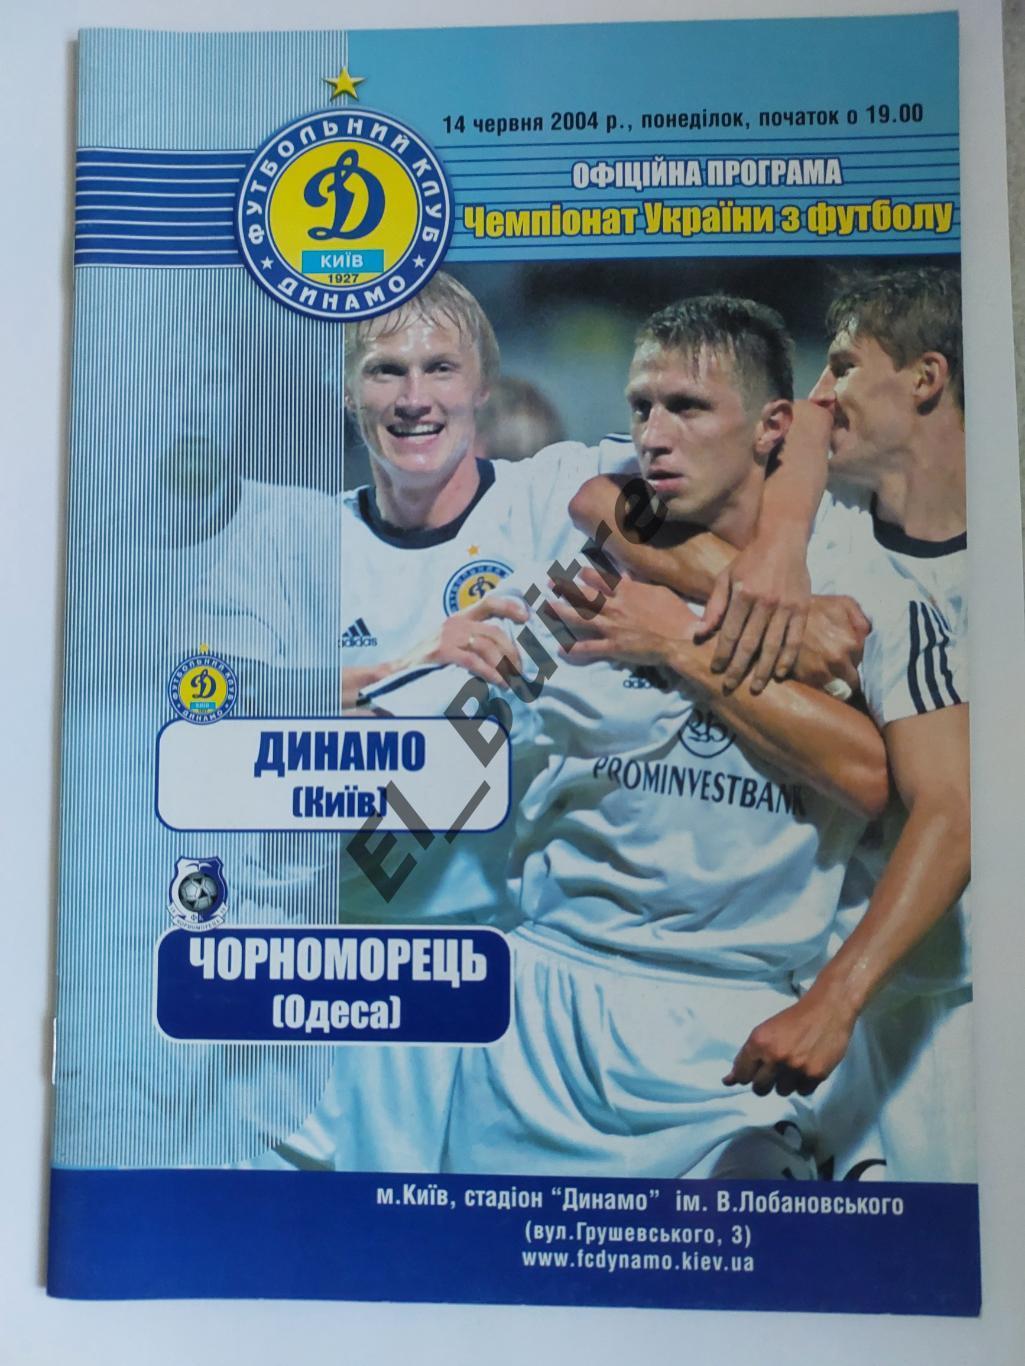 14.06.2004. Динамо (Киев) - Черноморец (Одесса). Чемпионат Украины 2003/04.